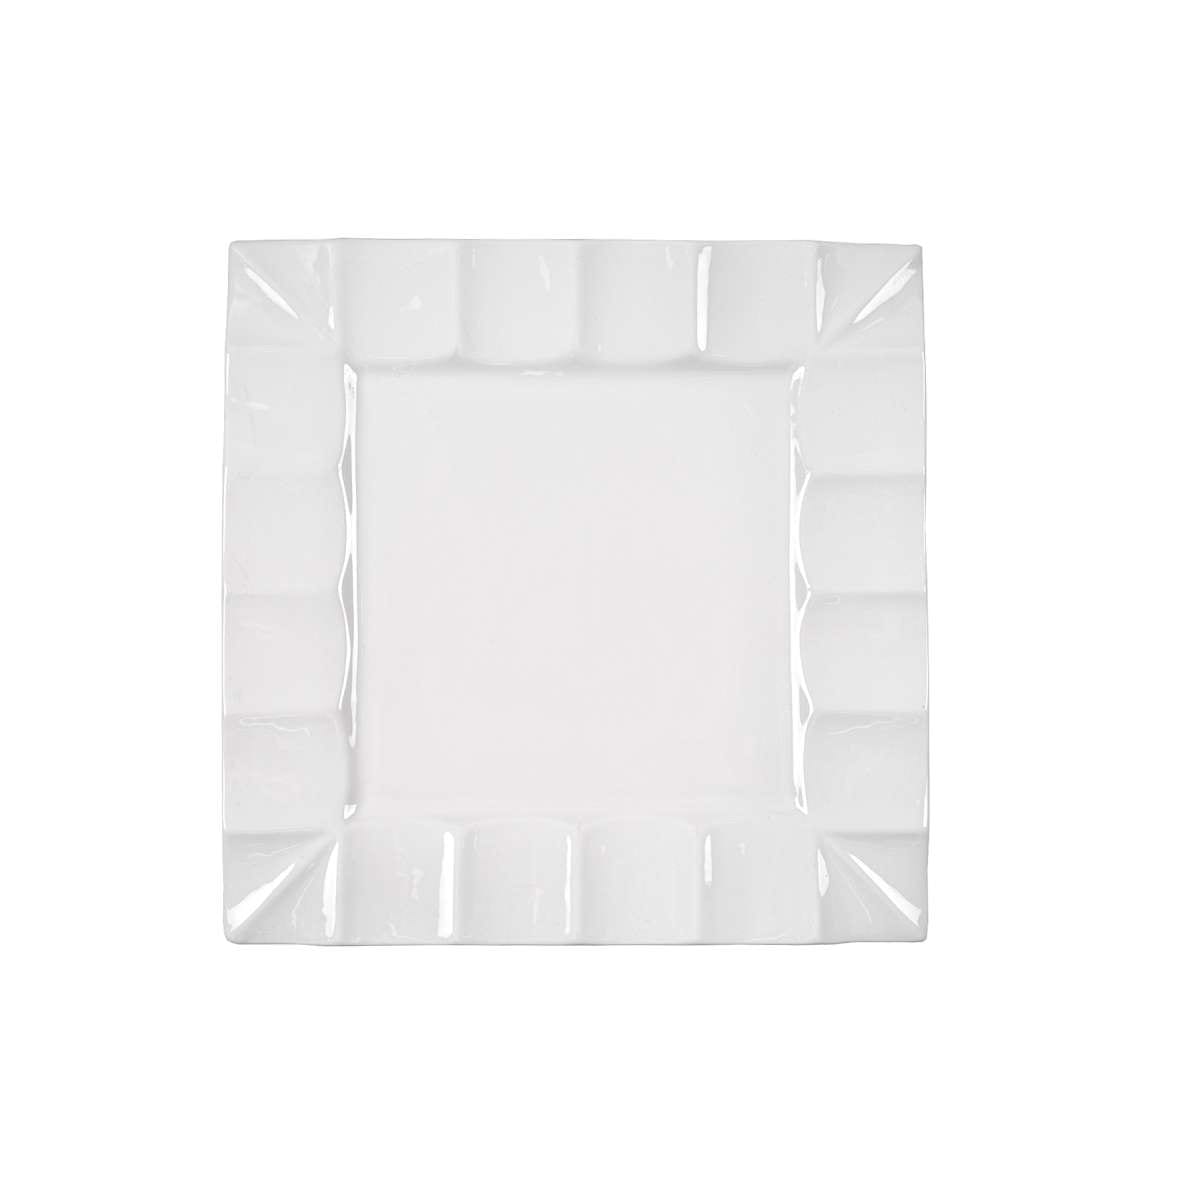 Πιατέλα Τετράγωνη Πορσελάνης Λευκή Art Et Lumiere 33x33x2,5εκ. 06853 (Υλικό: Πορσελάνη, Χρώμα: Λευκό) - Art Et Lumiere - lumiere_06853